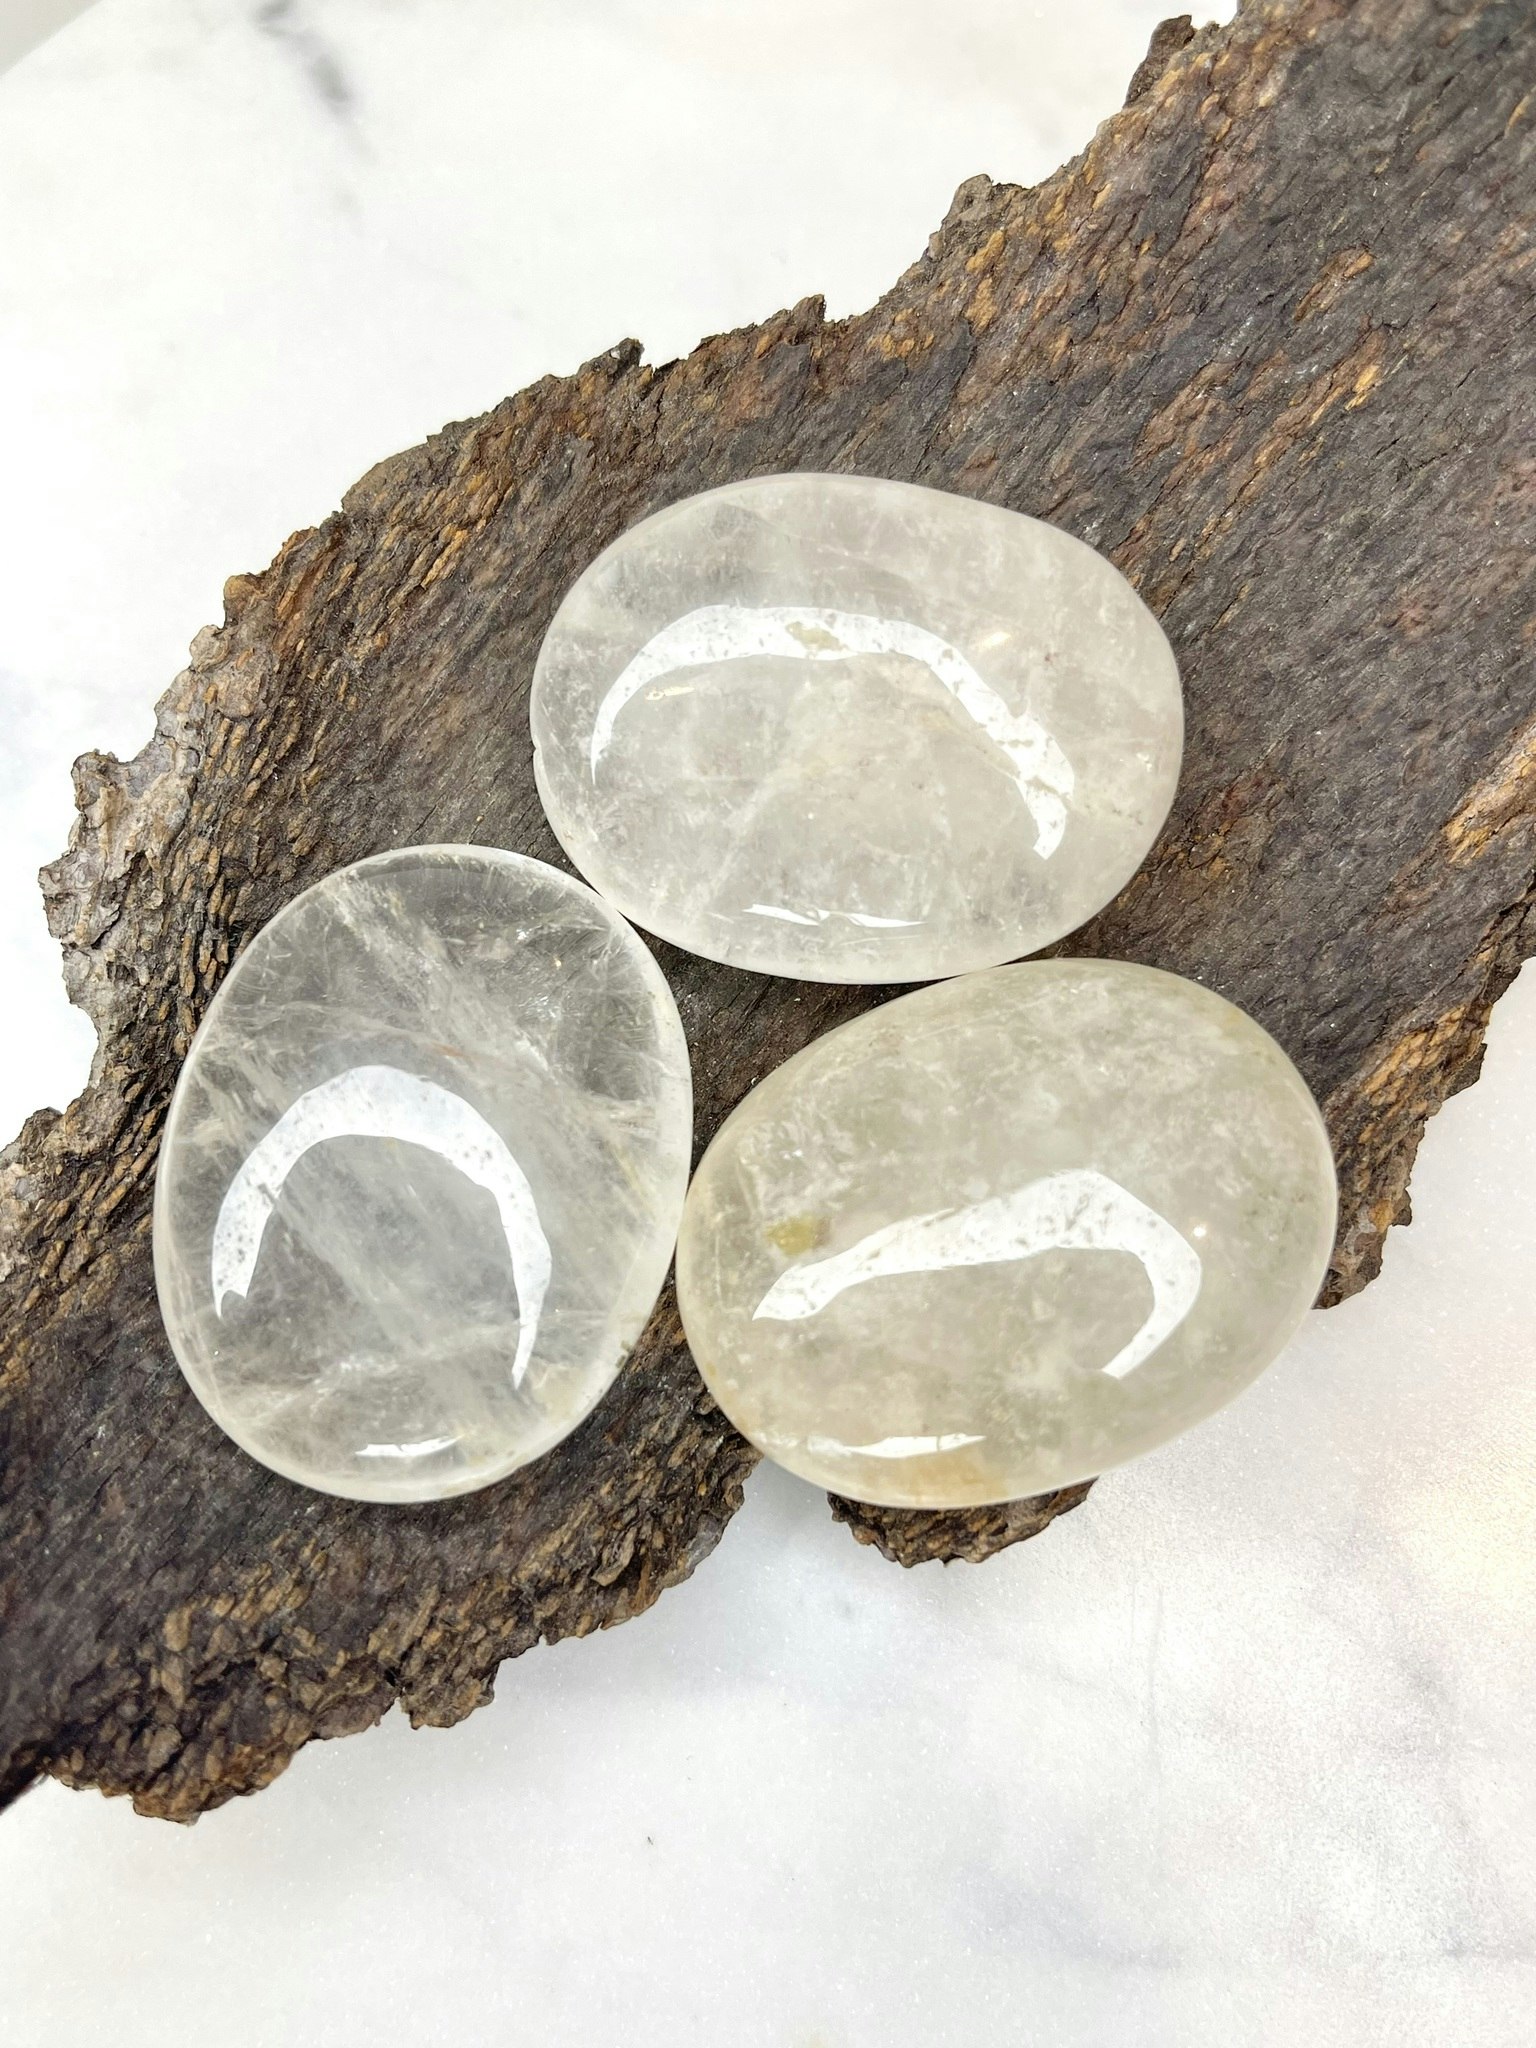 Bergskristall (clear quartz), liten touchstone